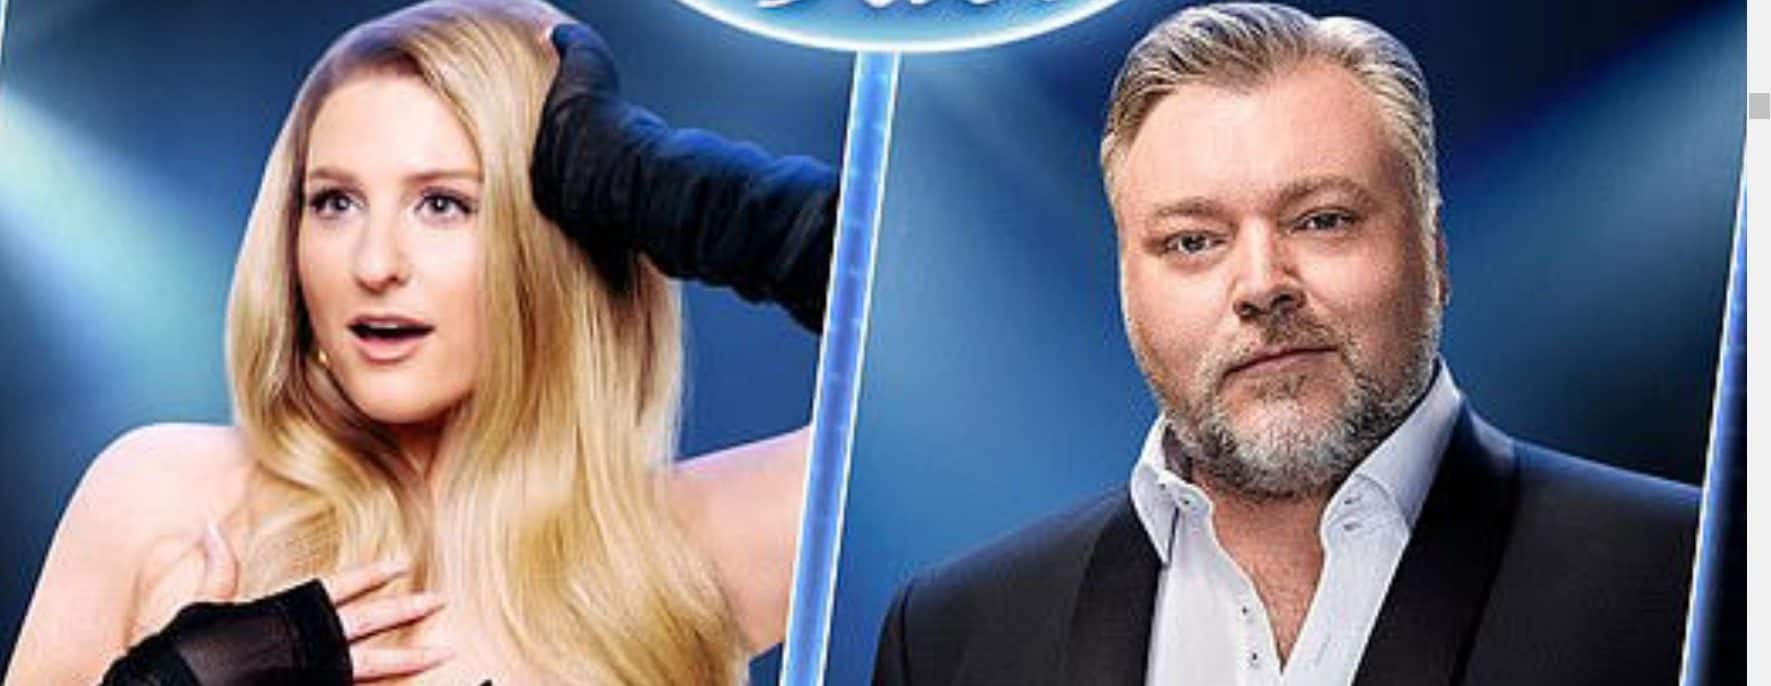 When Will Australian Idol Season 8 Episode 1 Be Released? Who Will Judge in Season 8?